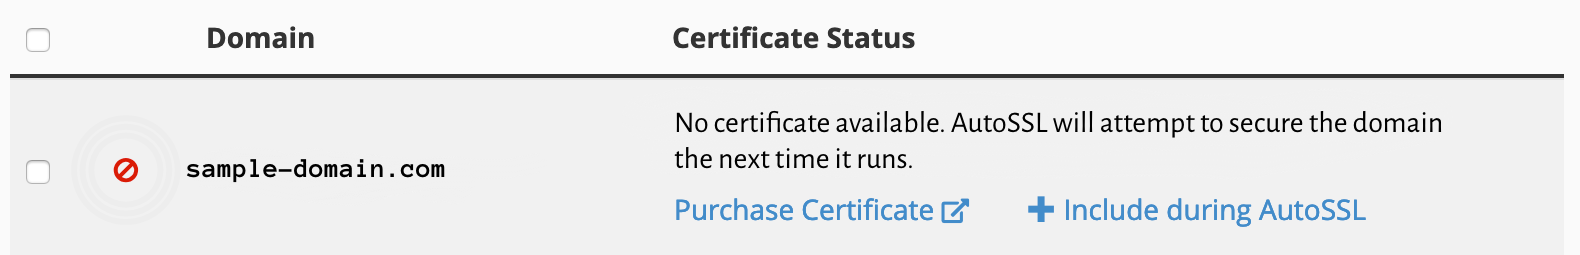 Certificate_Status.png